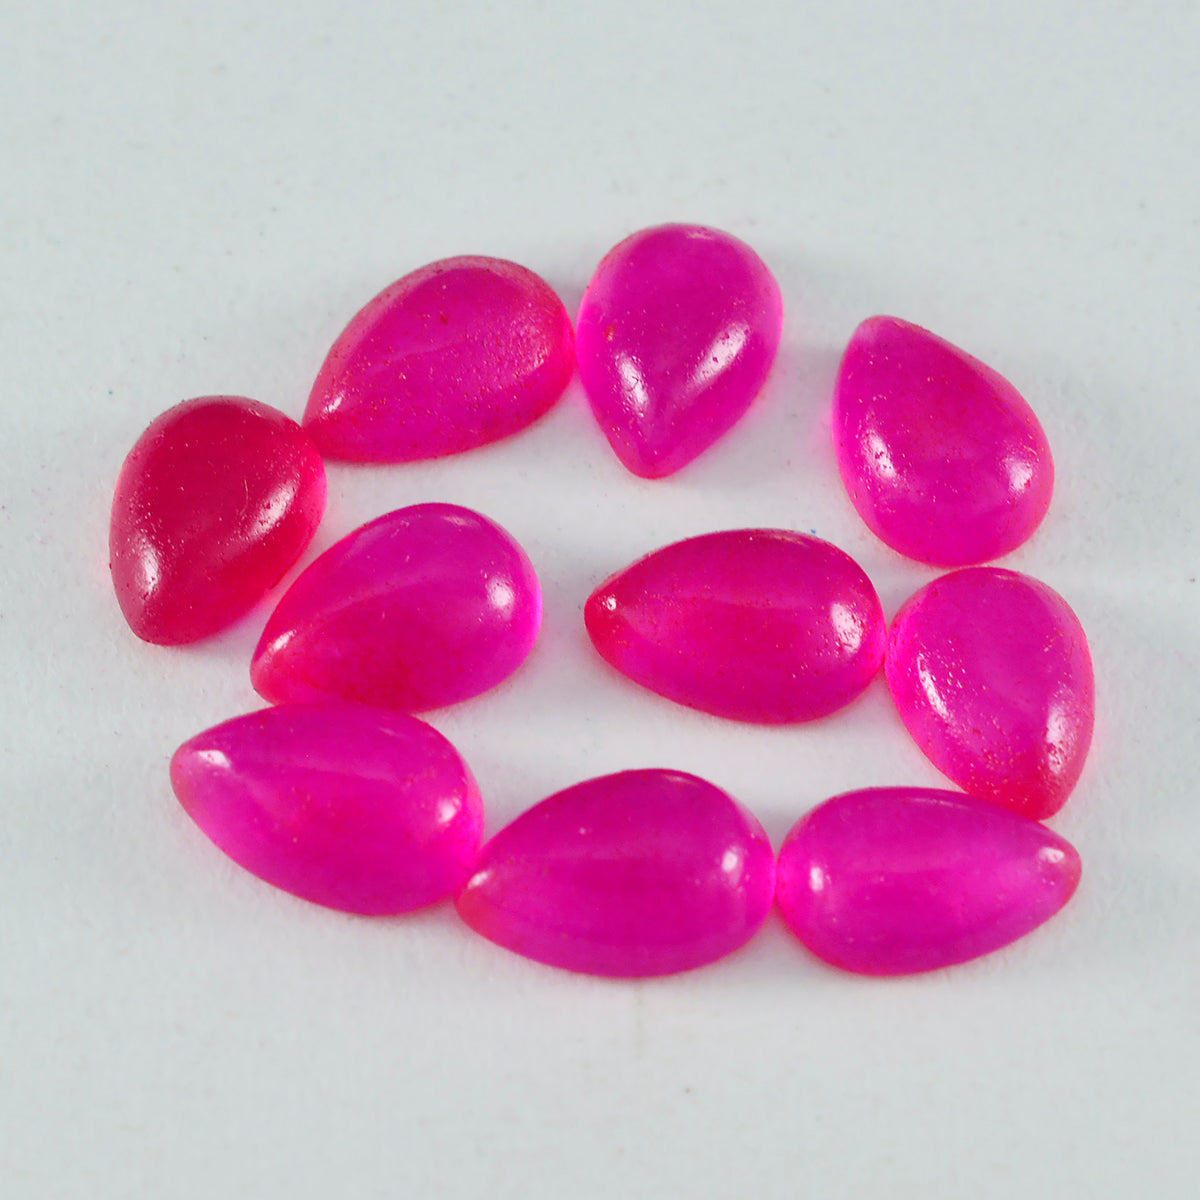 riyogems 1pc cabochon di diaspro rosso 10x14 mm gemme di bella qualità a forma di pera